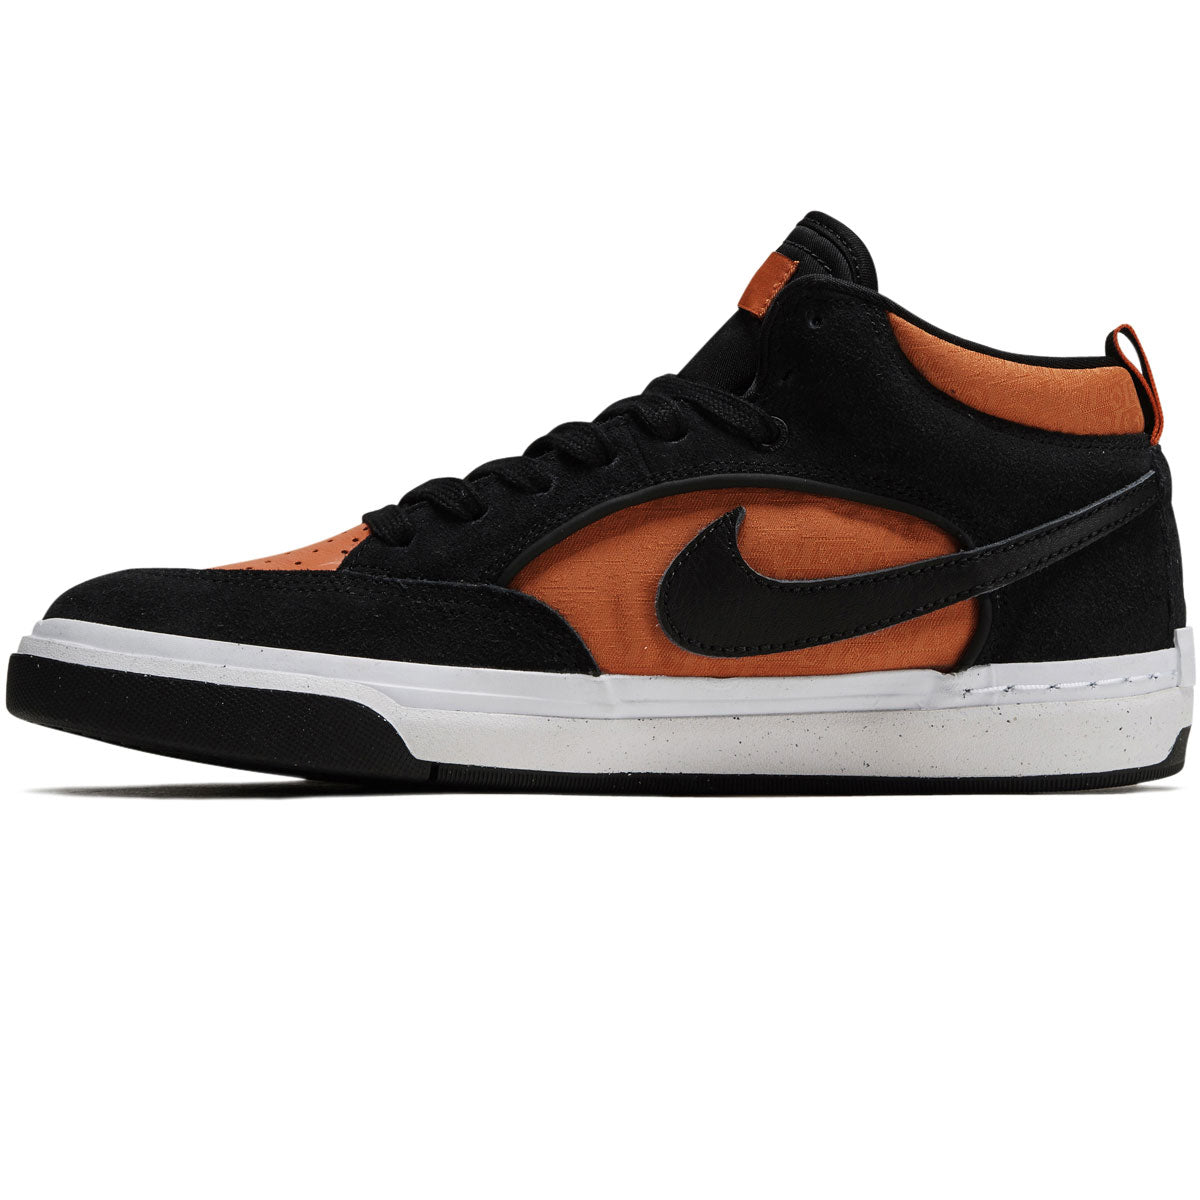 Nike SB React Leo Shoes - Black/Black/Orange/Electro Orange image 2